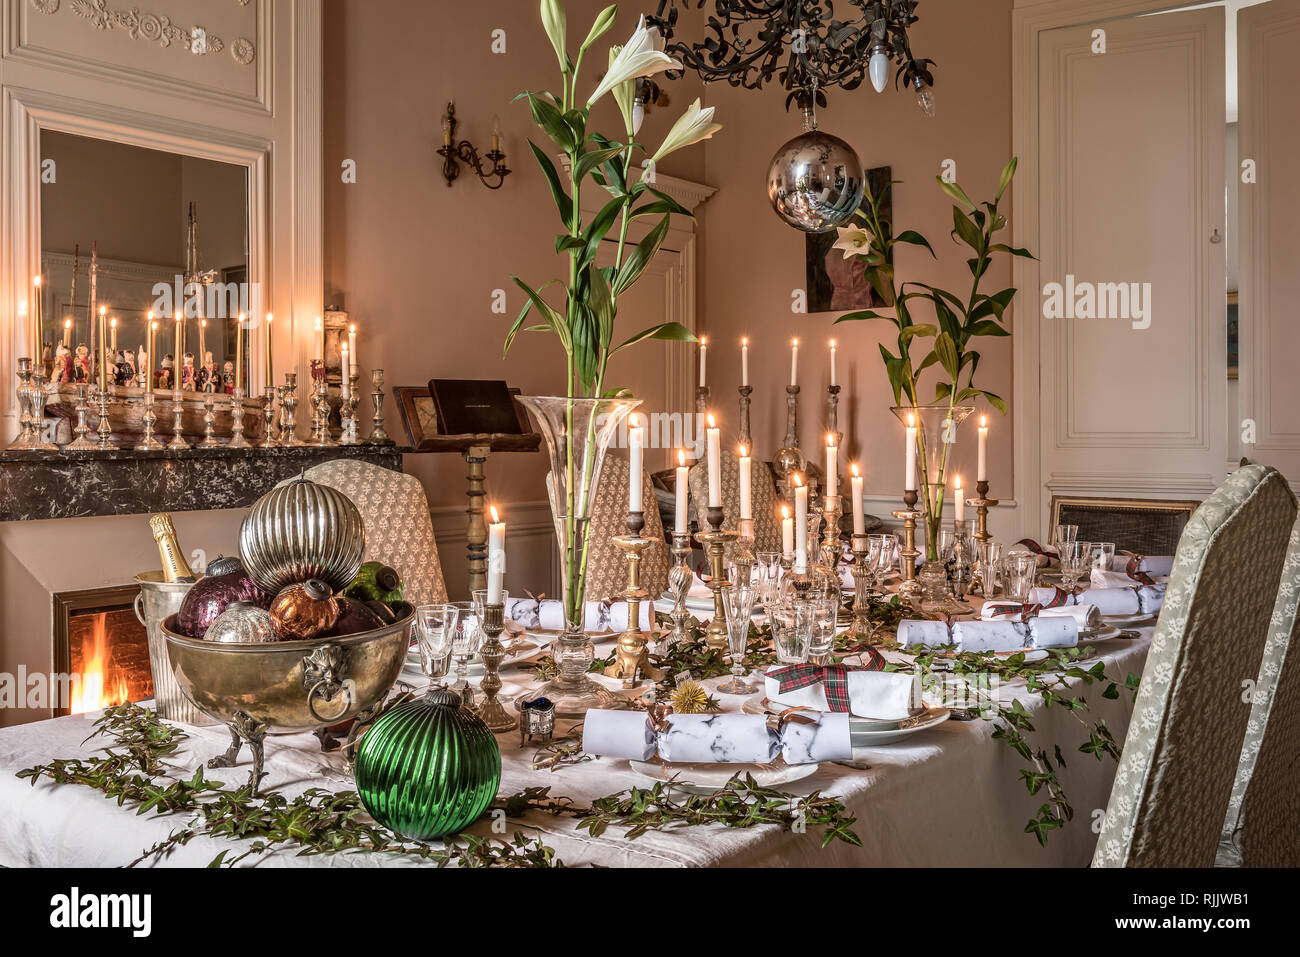 . Quecksilber Kerzenständer entlang der kamineinfassung mit mehr auf der Tabelle hinzufügen, um die festliche Gefühl des Besonderen mit Lilien gesäumt. Dekorative la Stockfoto